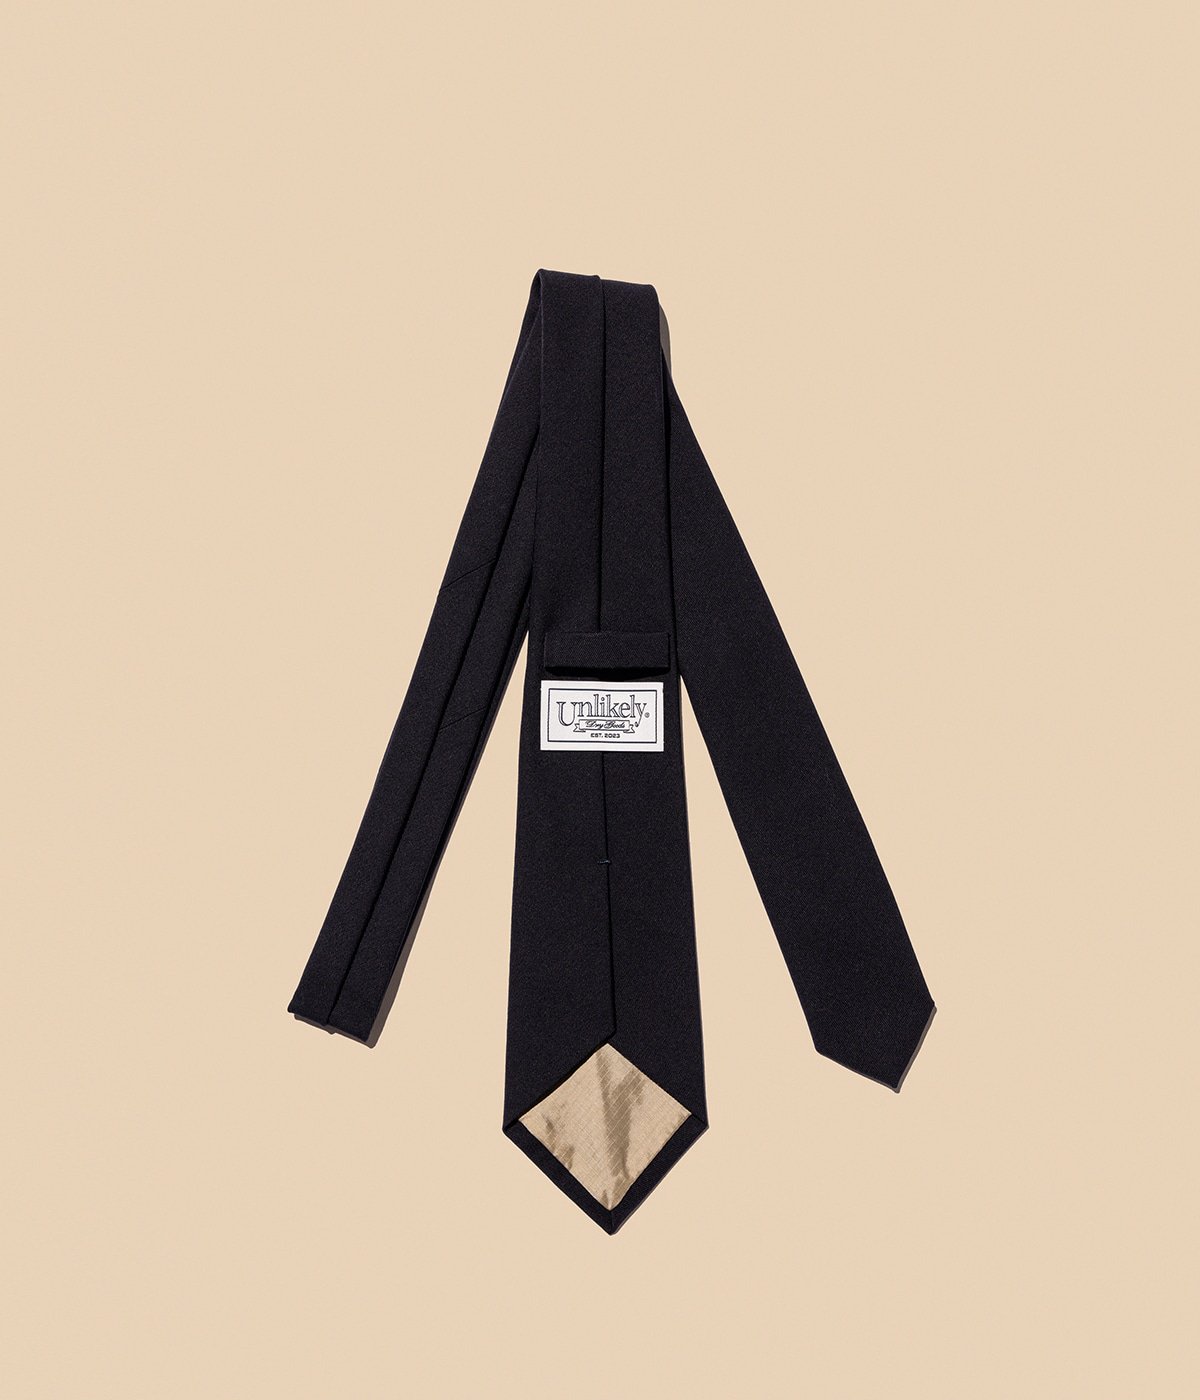 Unlikely Tie Wool Serge | Unlikely(アンライクリー) / ファッション 